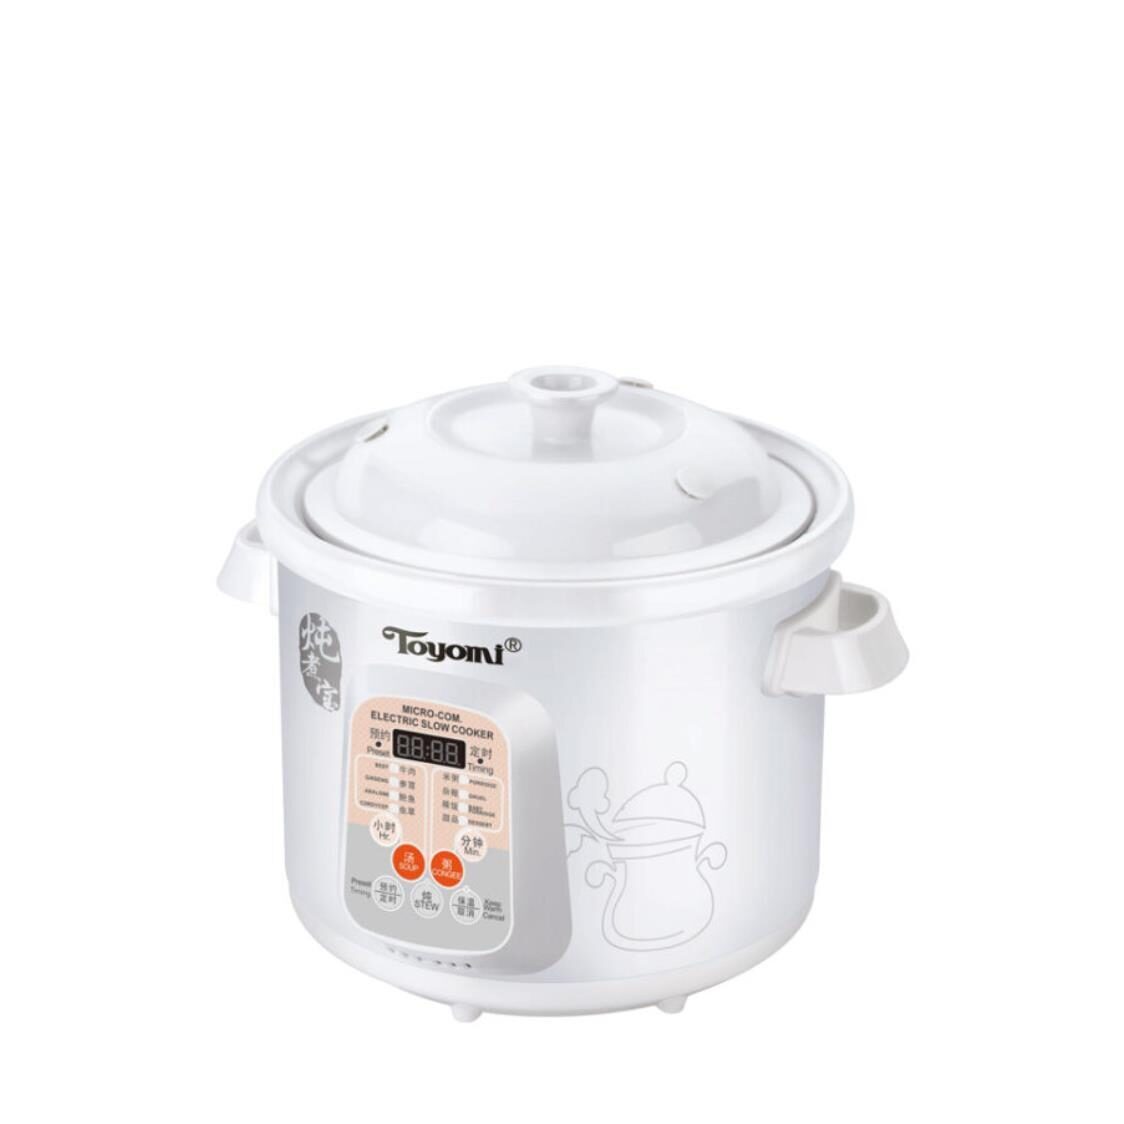 Toyomi Micro-Com Stew Cooker 4L